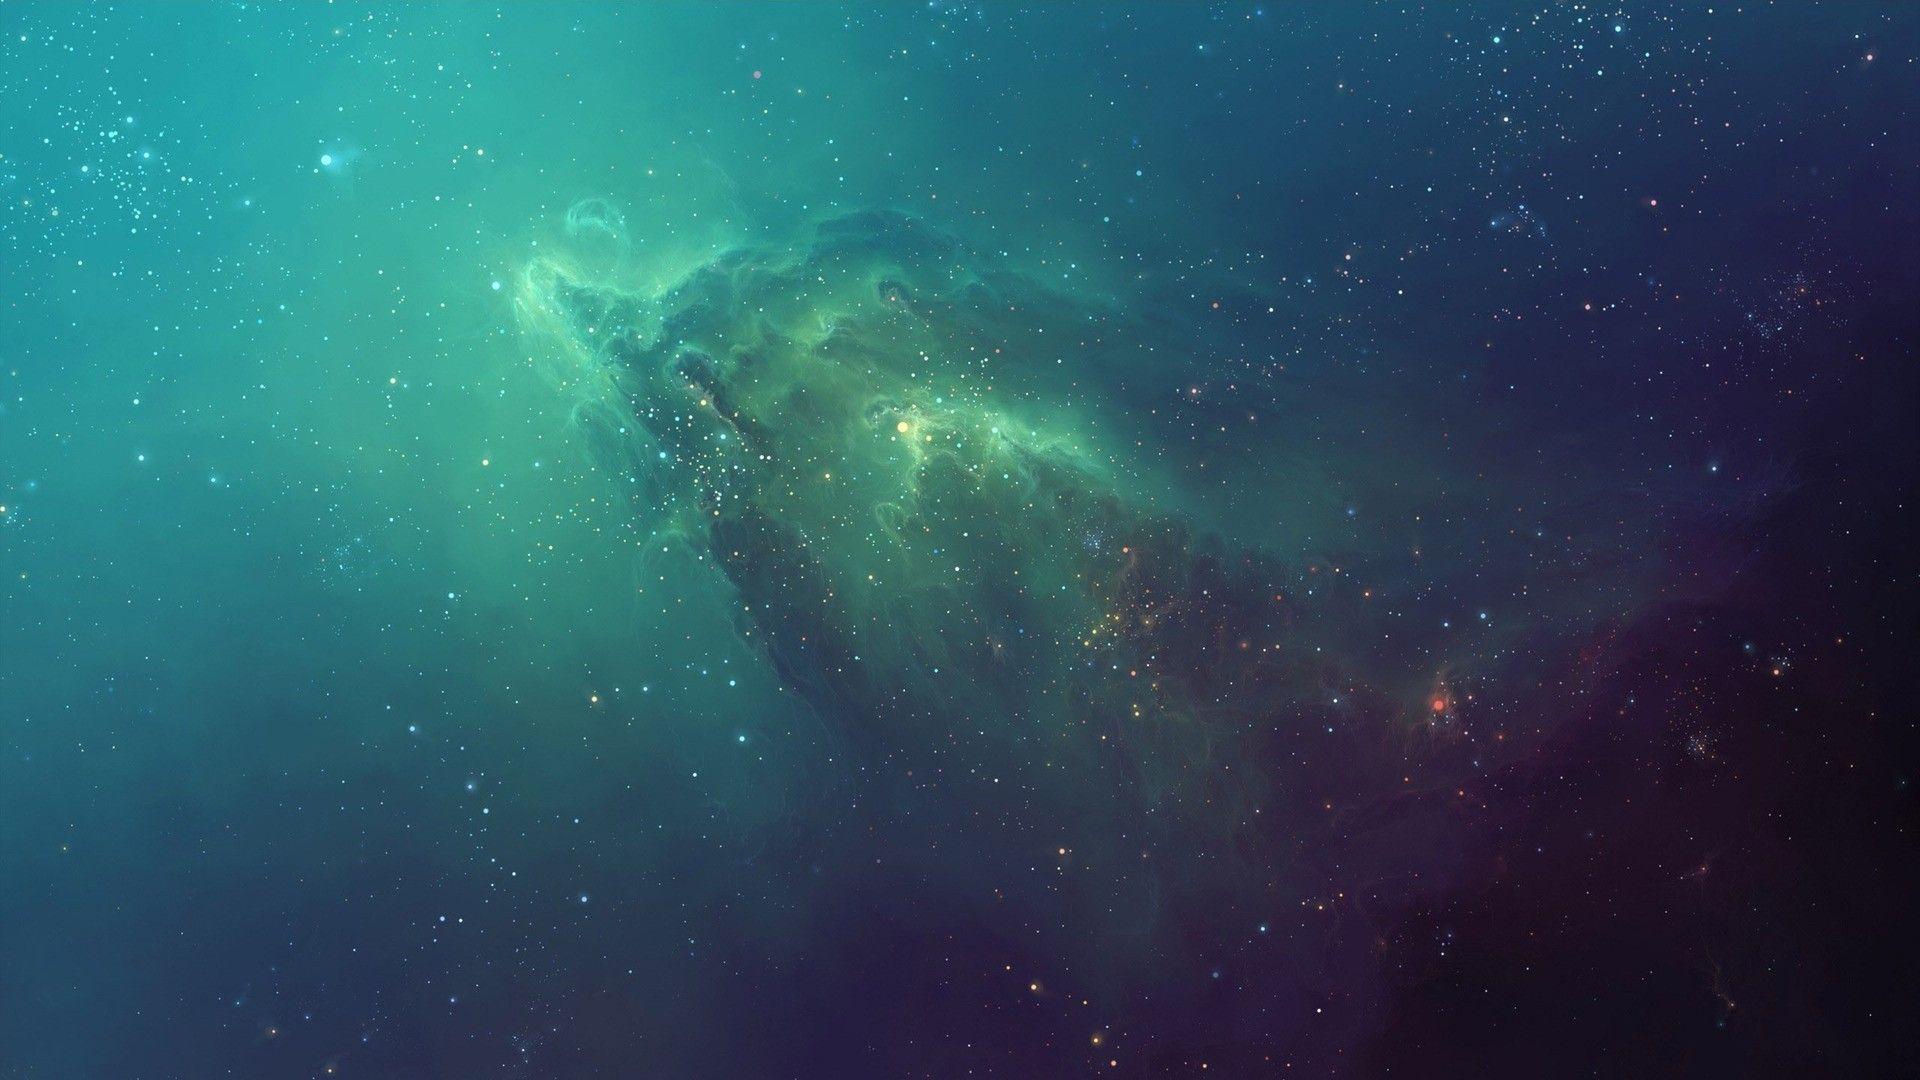 Green Nebula Wallpapers - Top Free Green Nebula Backgrounds